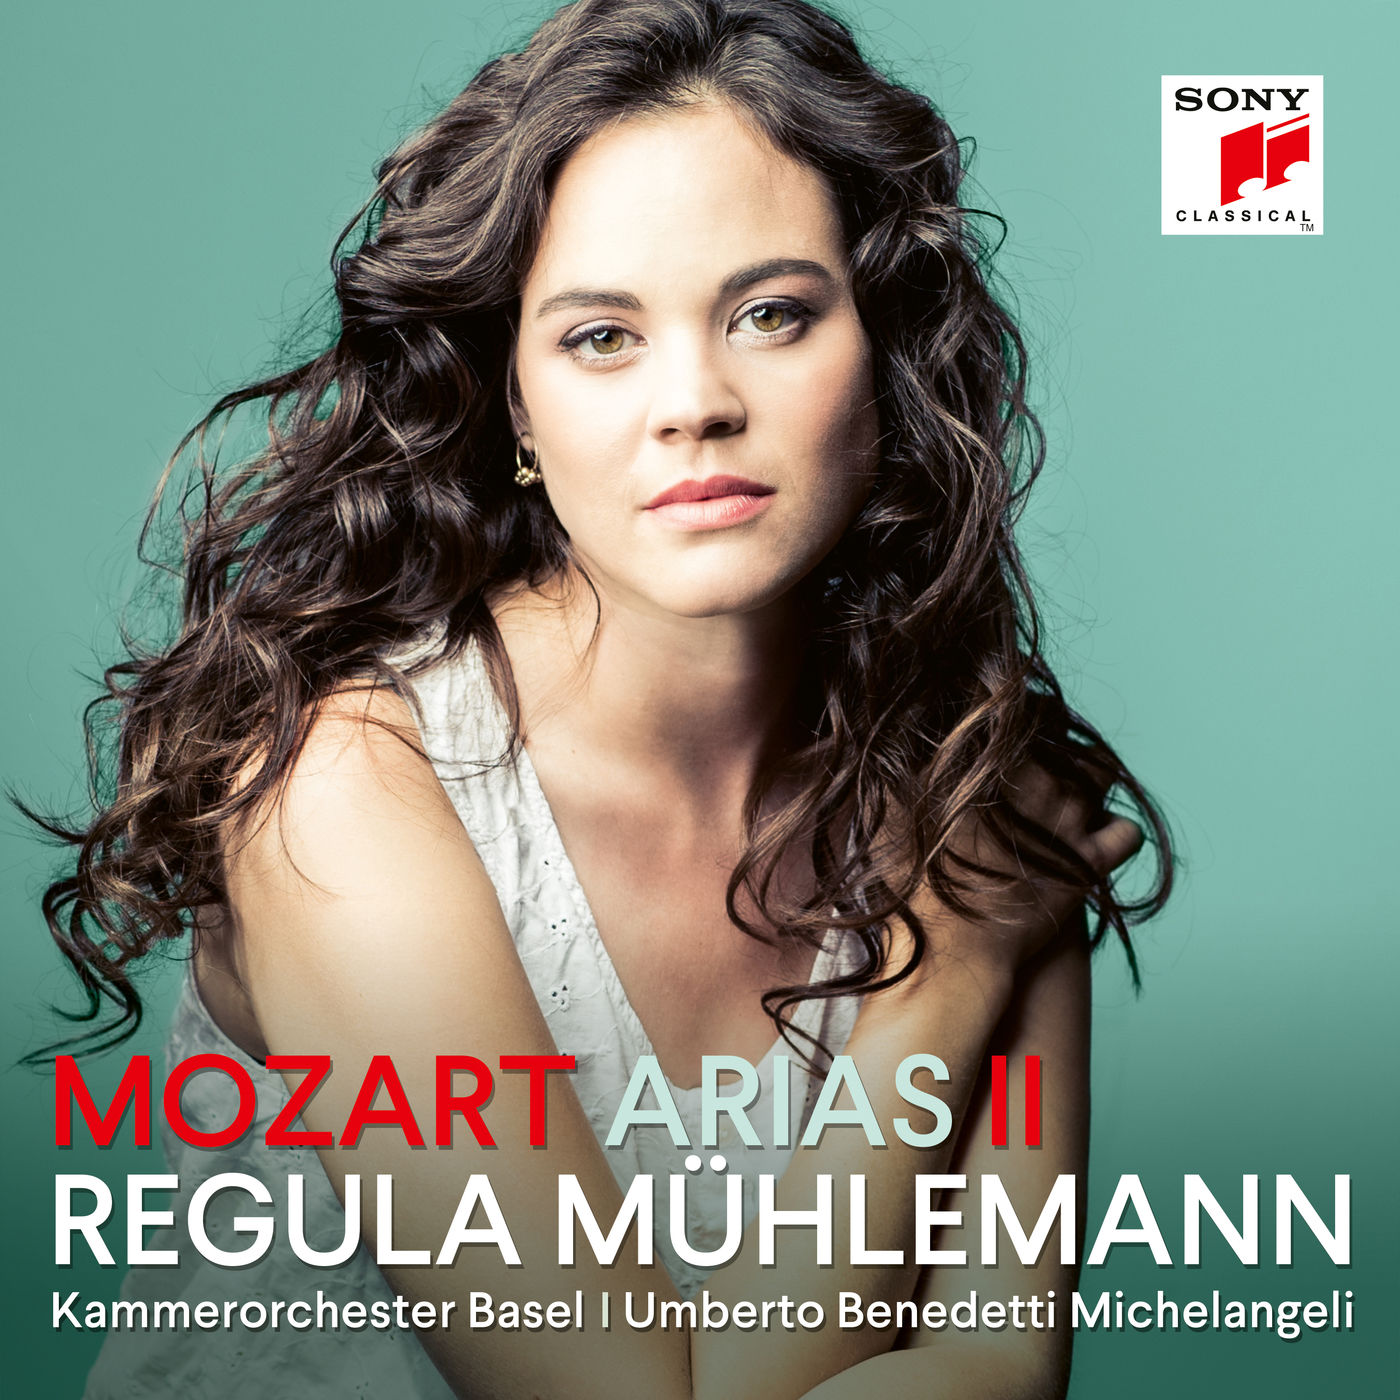 Regula Muhlemann - Mozart Arias II (2020) [FLAC 24bit/96kHz]